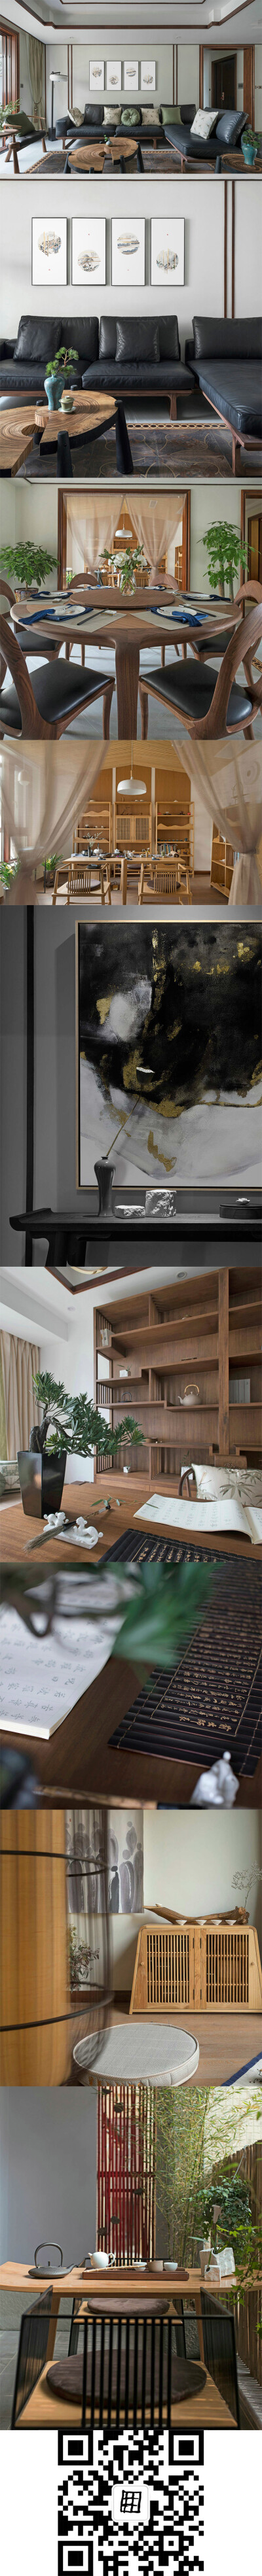 现代居室空间与中式软装的完美结合，反映出居住者自然、健康、淡泊的生活态度